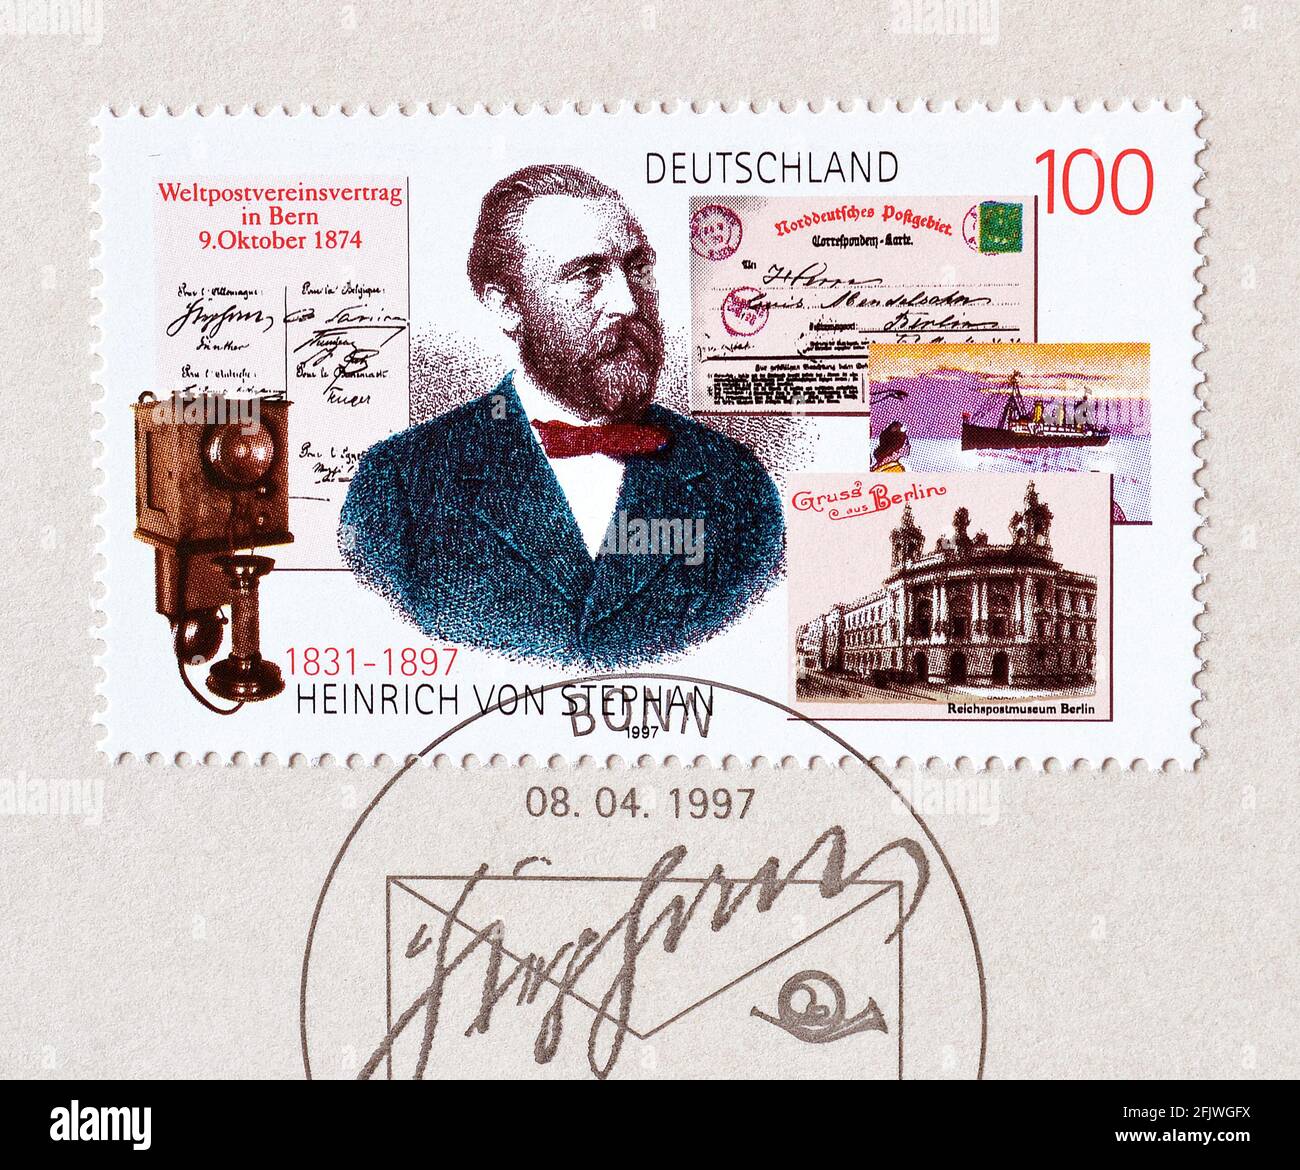 Francobollo annullato stampato dalla Germania, che mostra il direttore generale della posta per l'Impero tedesco Heinrich von Stephan, circa 1997. Foto Stock